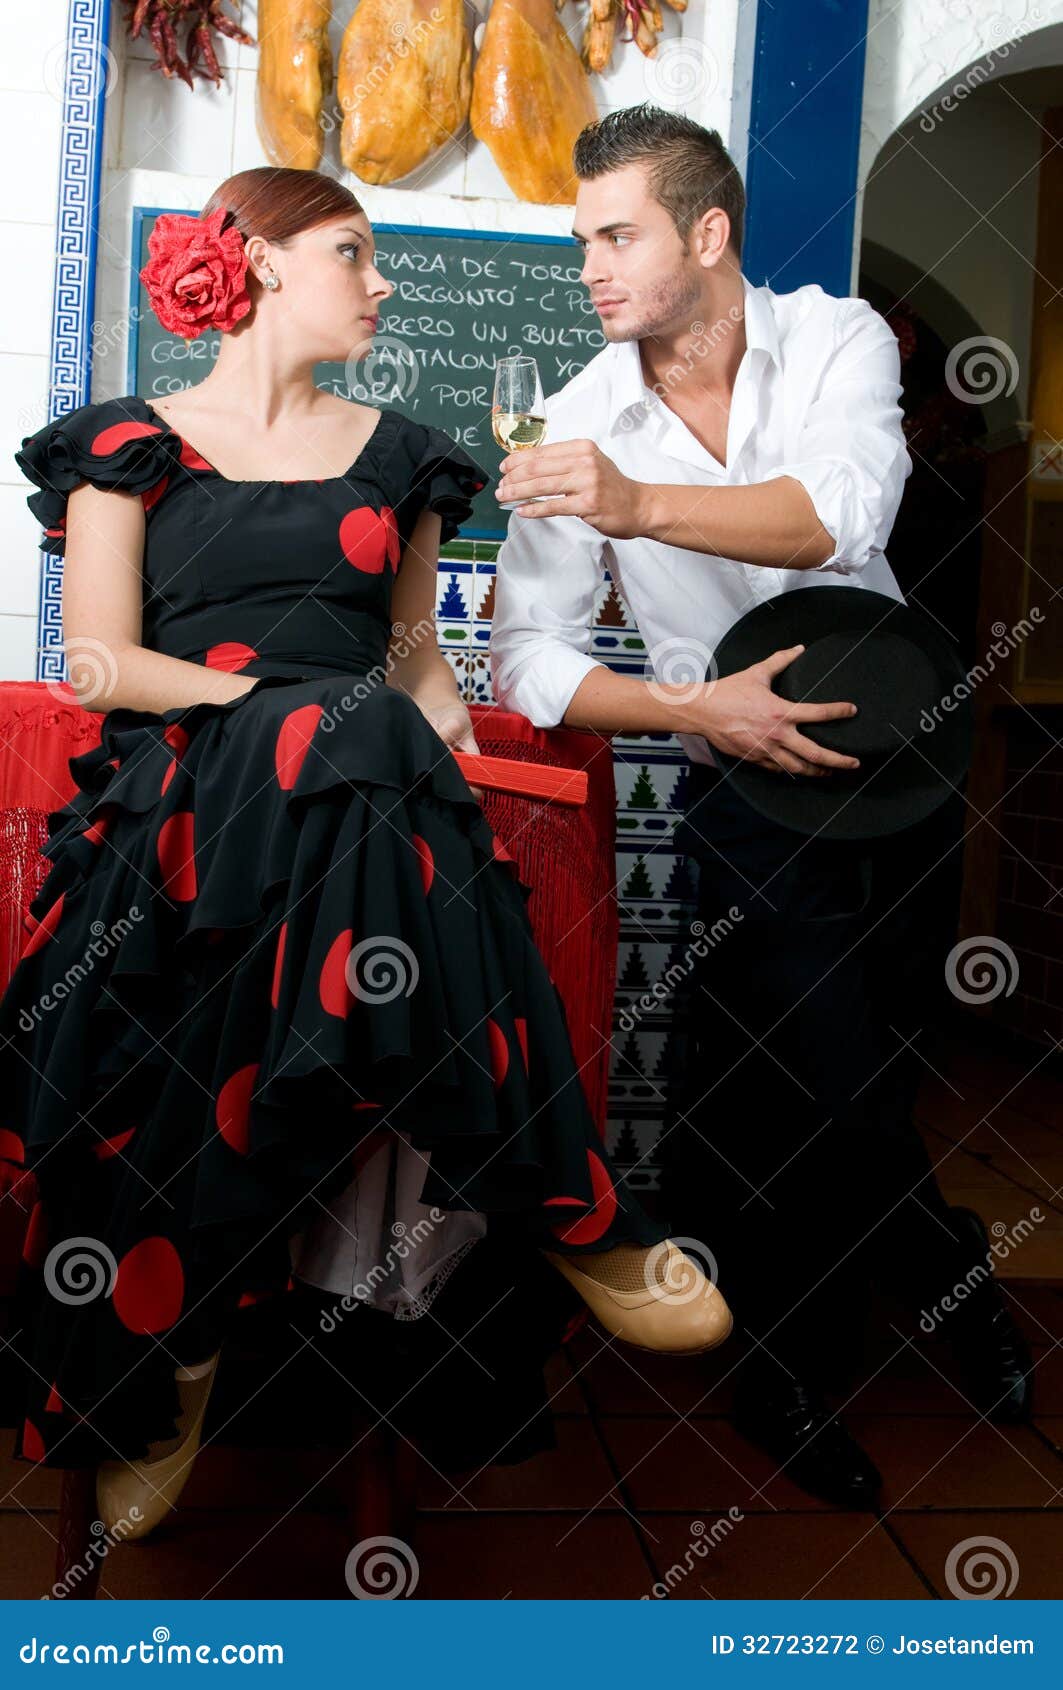 El Hombre Y La Mujer En Vestidos Tradicionales Flamenco Bailan Durante Feria De Abril En April de archivo - Imagen de arte, 32723272